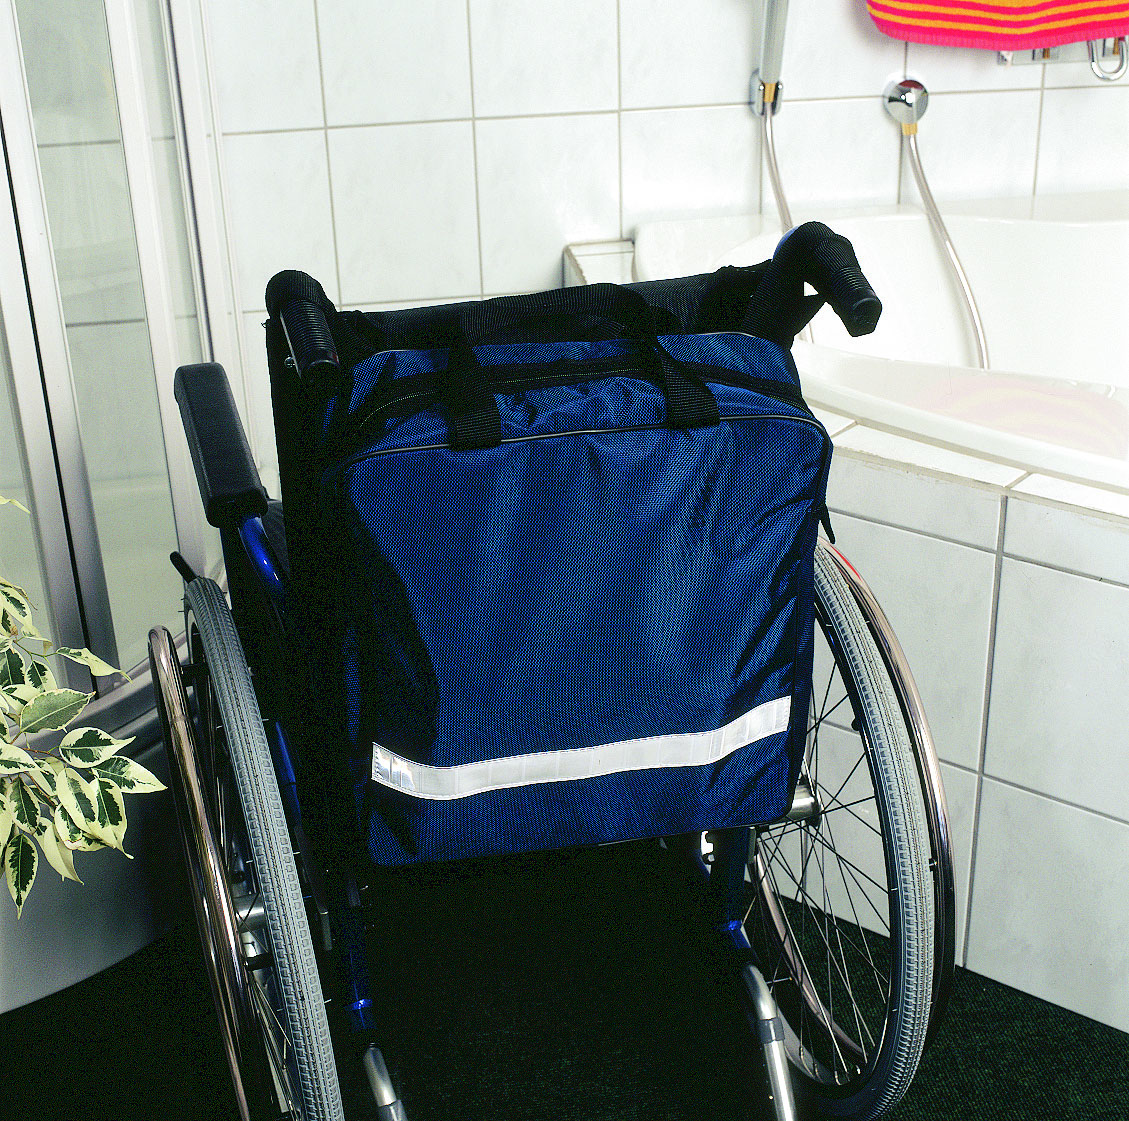 Seniorenwohl Onlineshop - Robuste Rollstuhltasche 33 x 35 x 15cm mit Reflektorstreifen